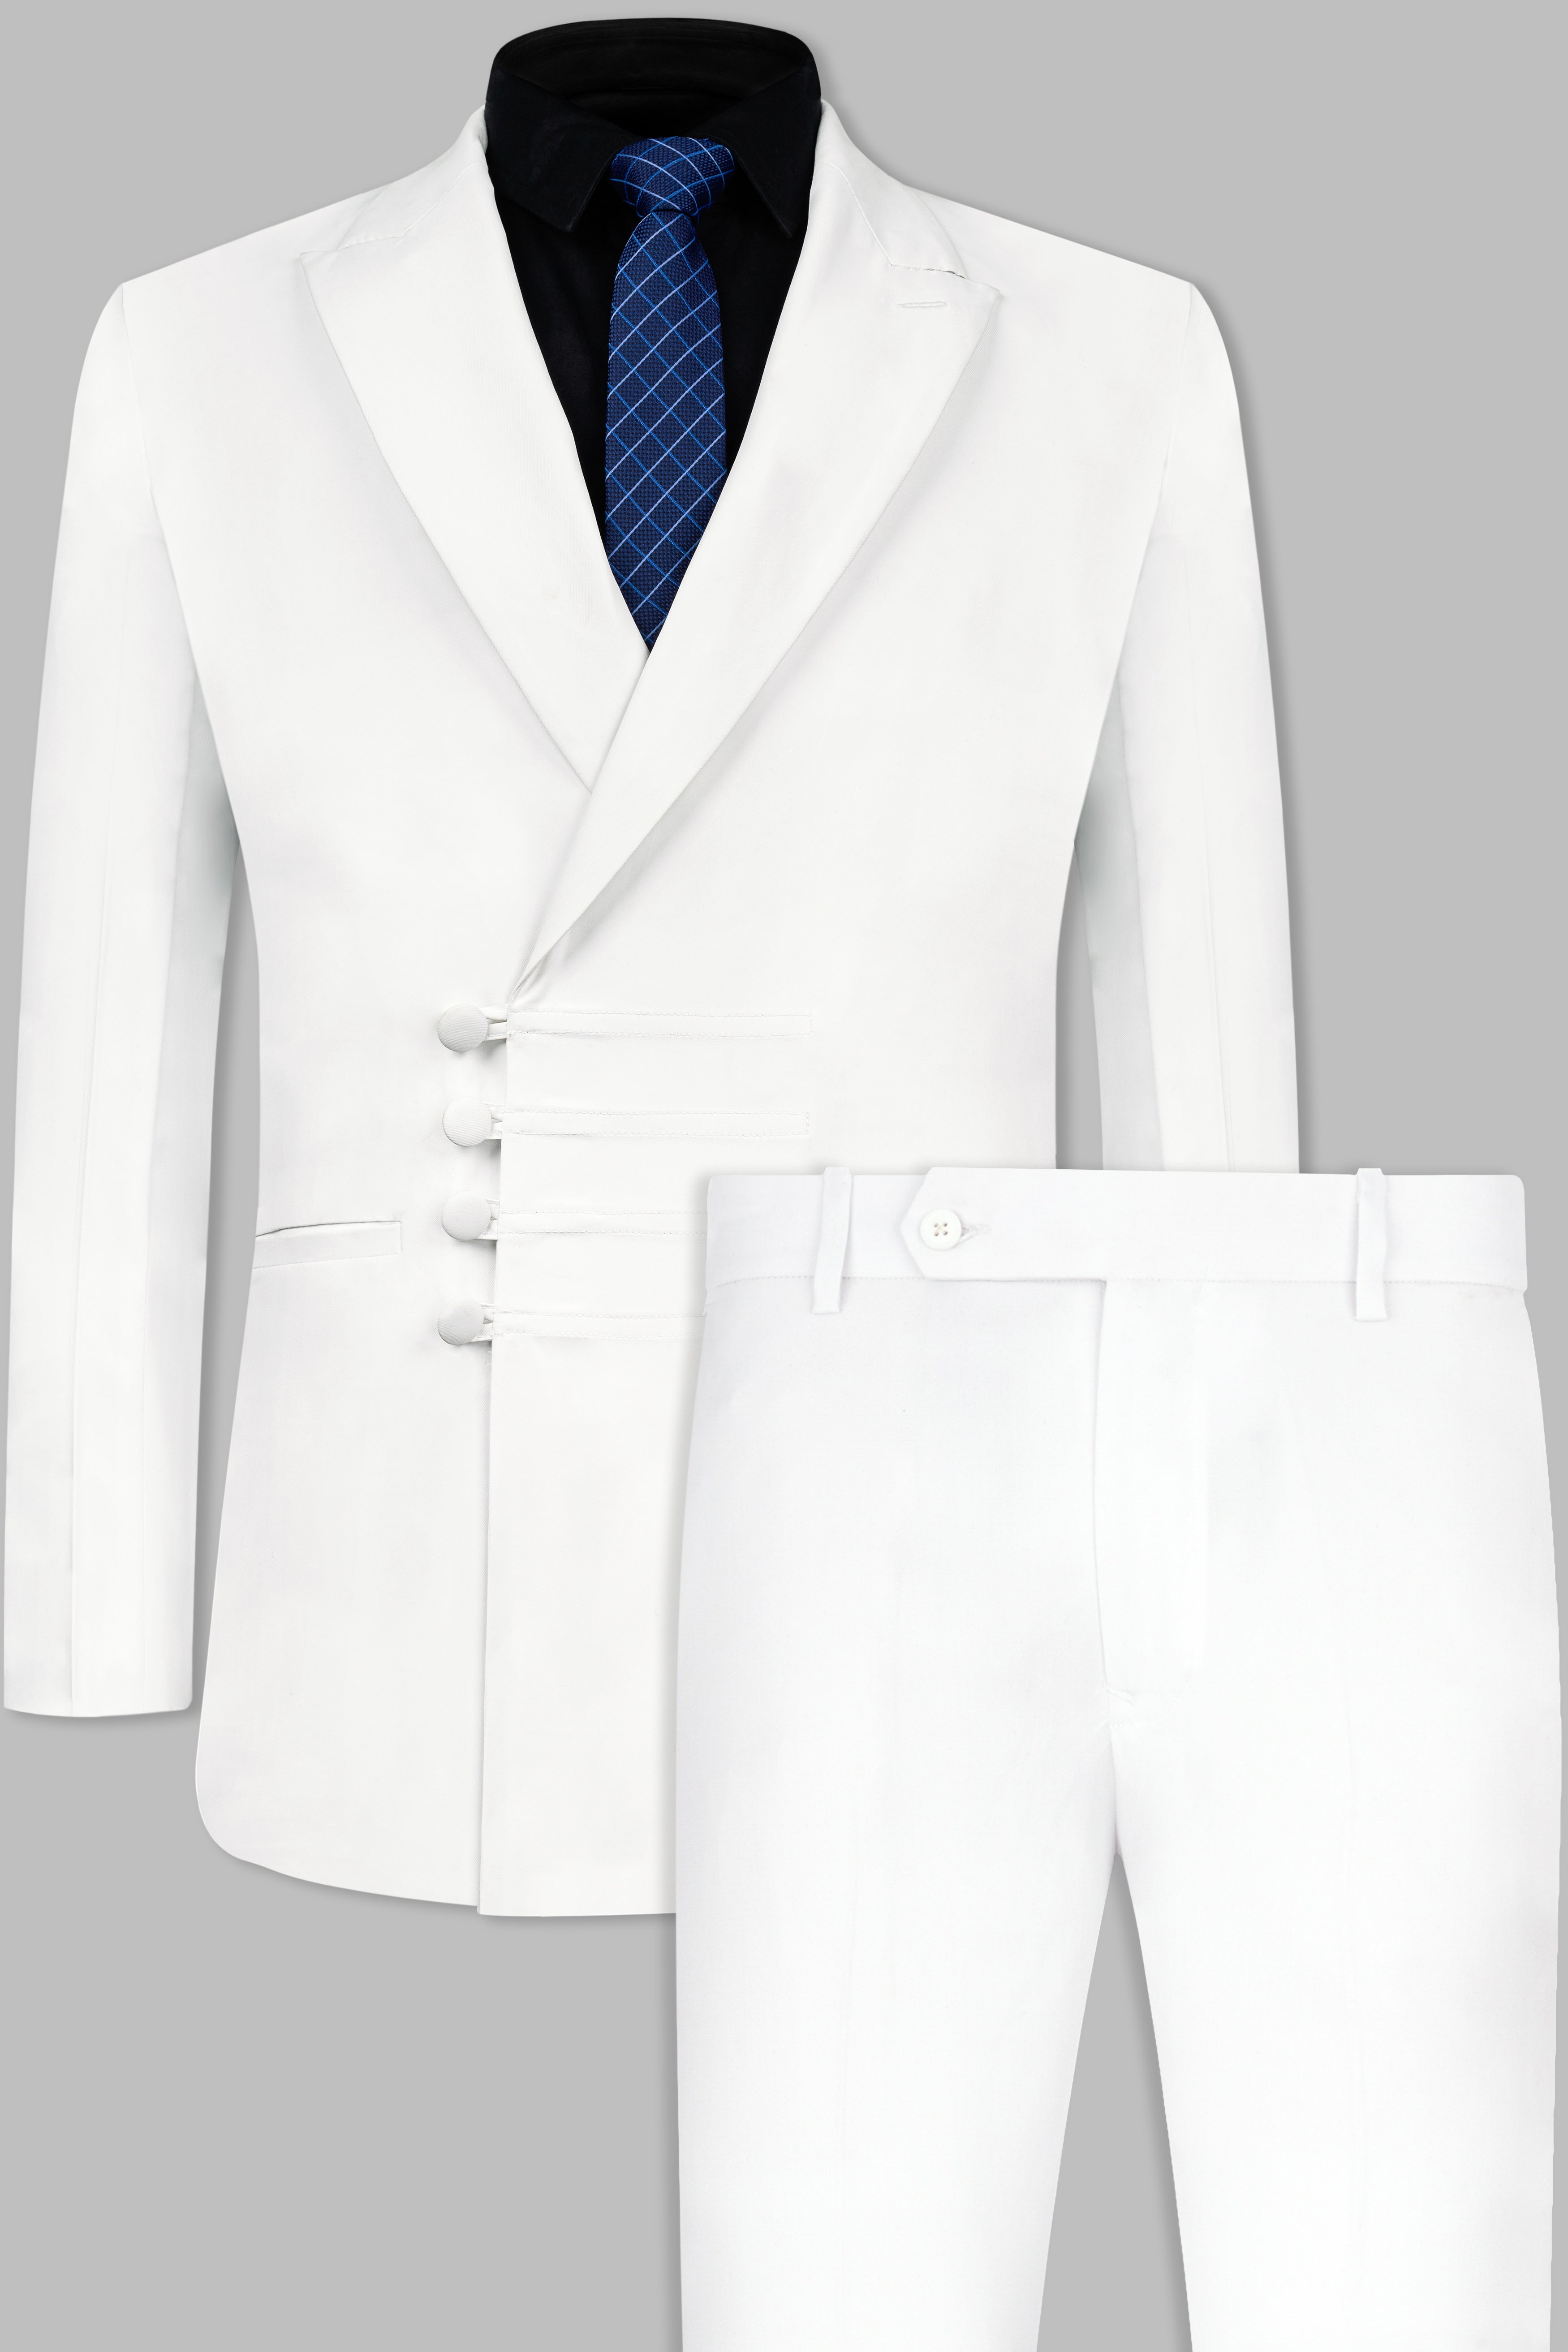 White Color Designer Party Wear Salwar Kameez Suit